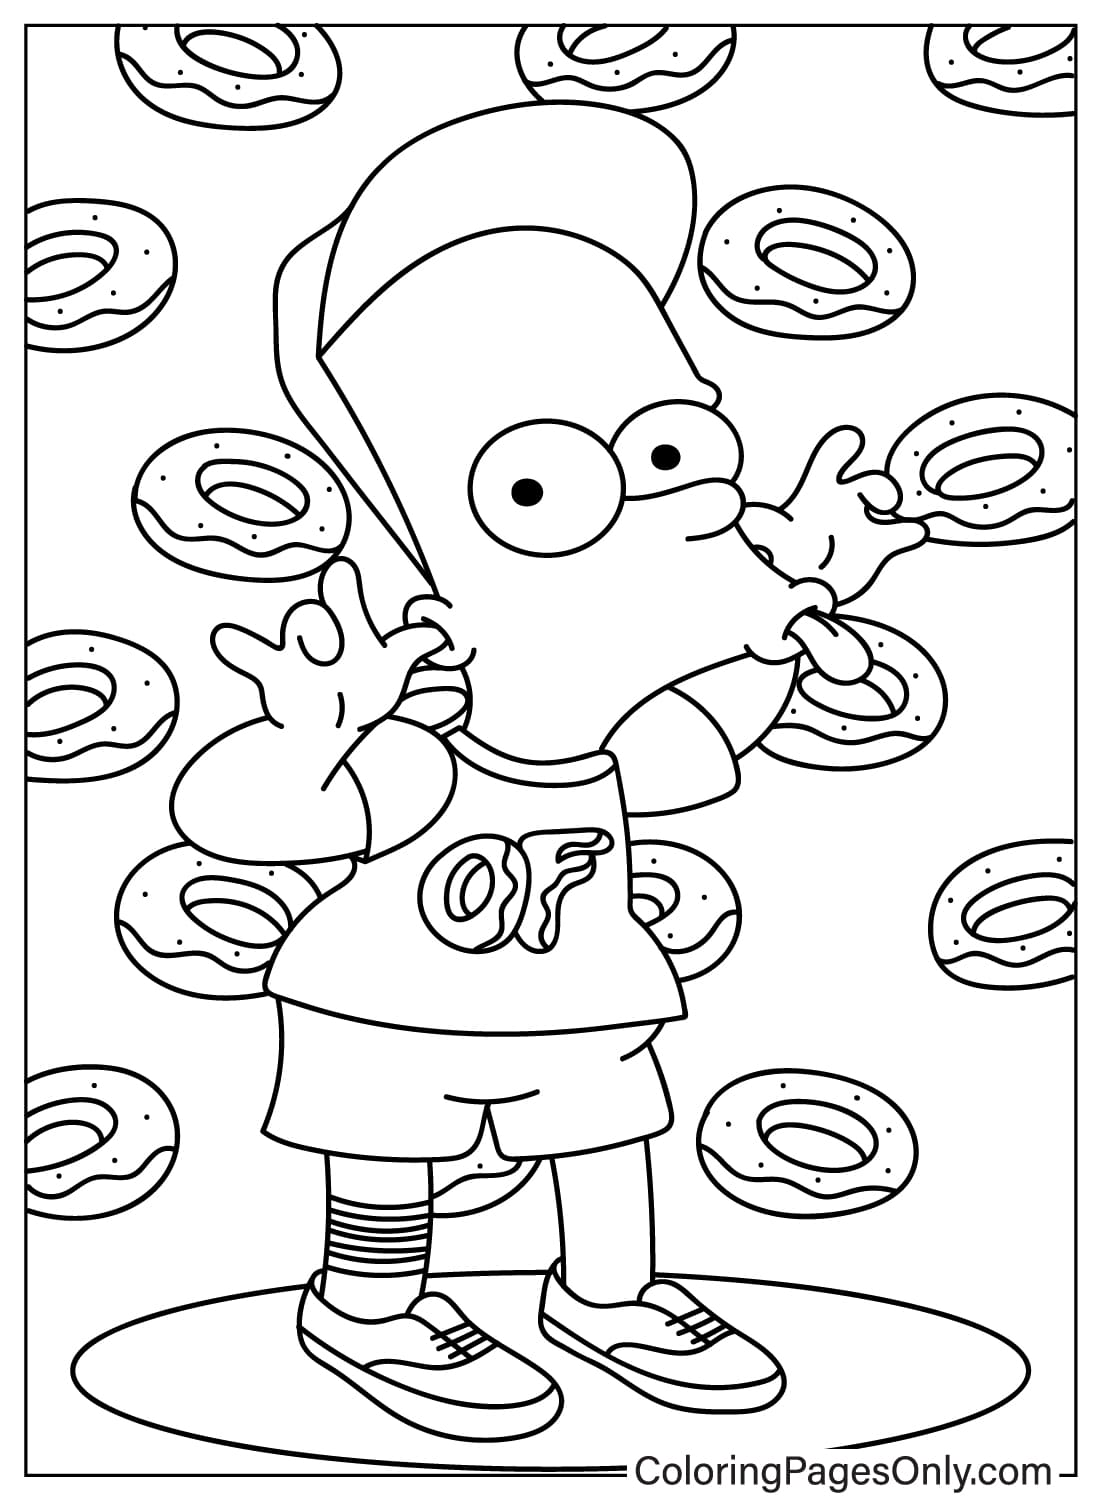 Página para colorir grátis de Bart dos Simpsons